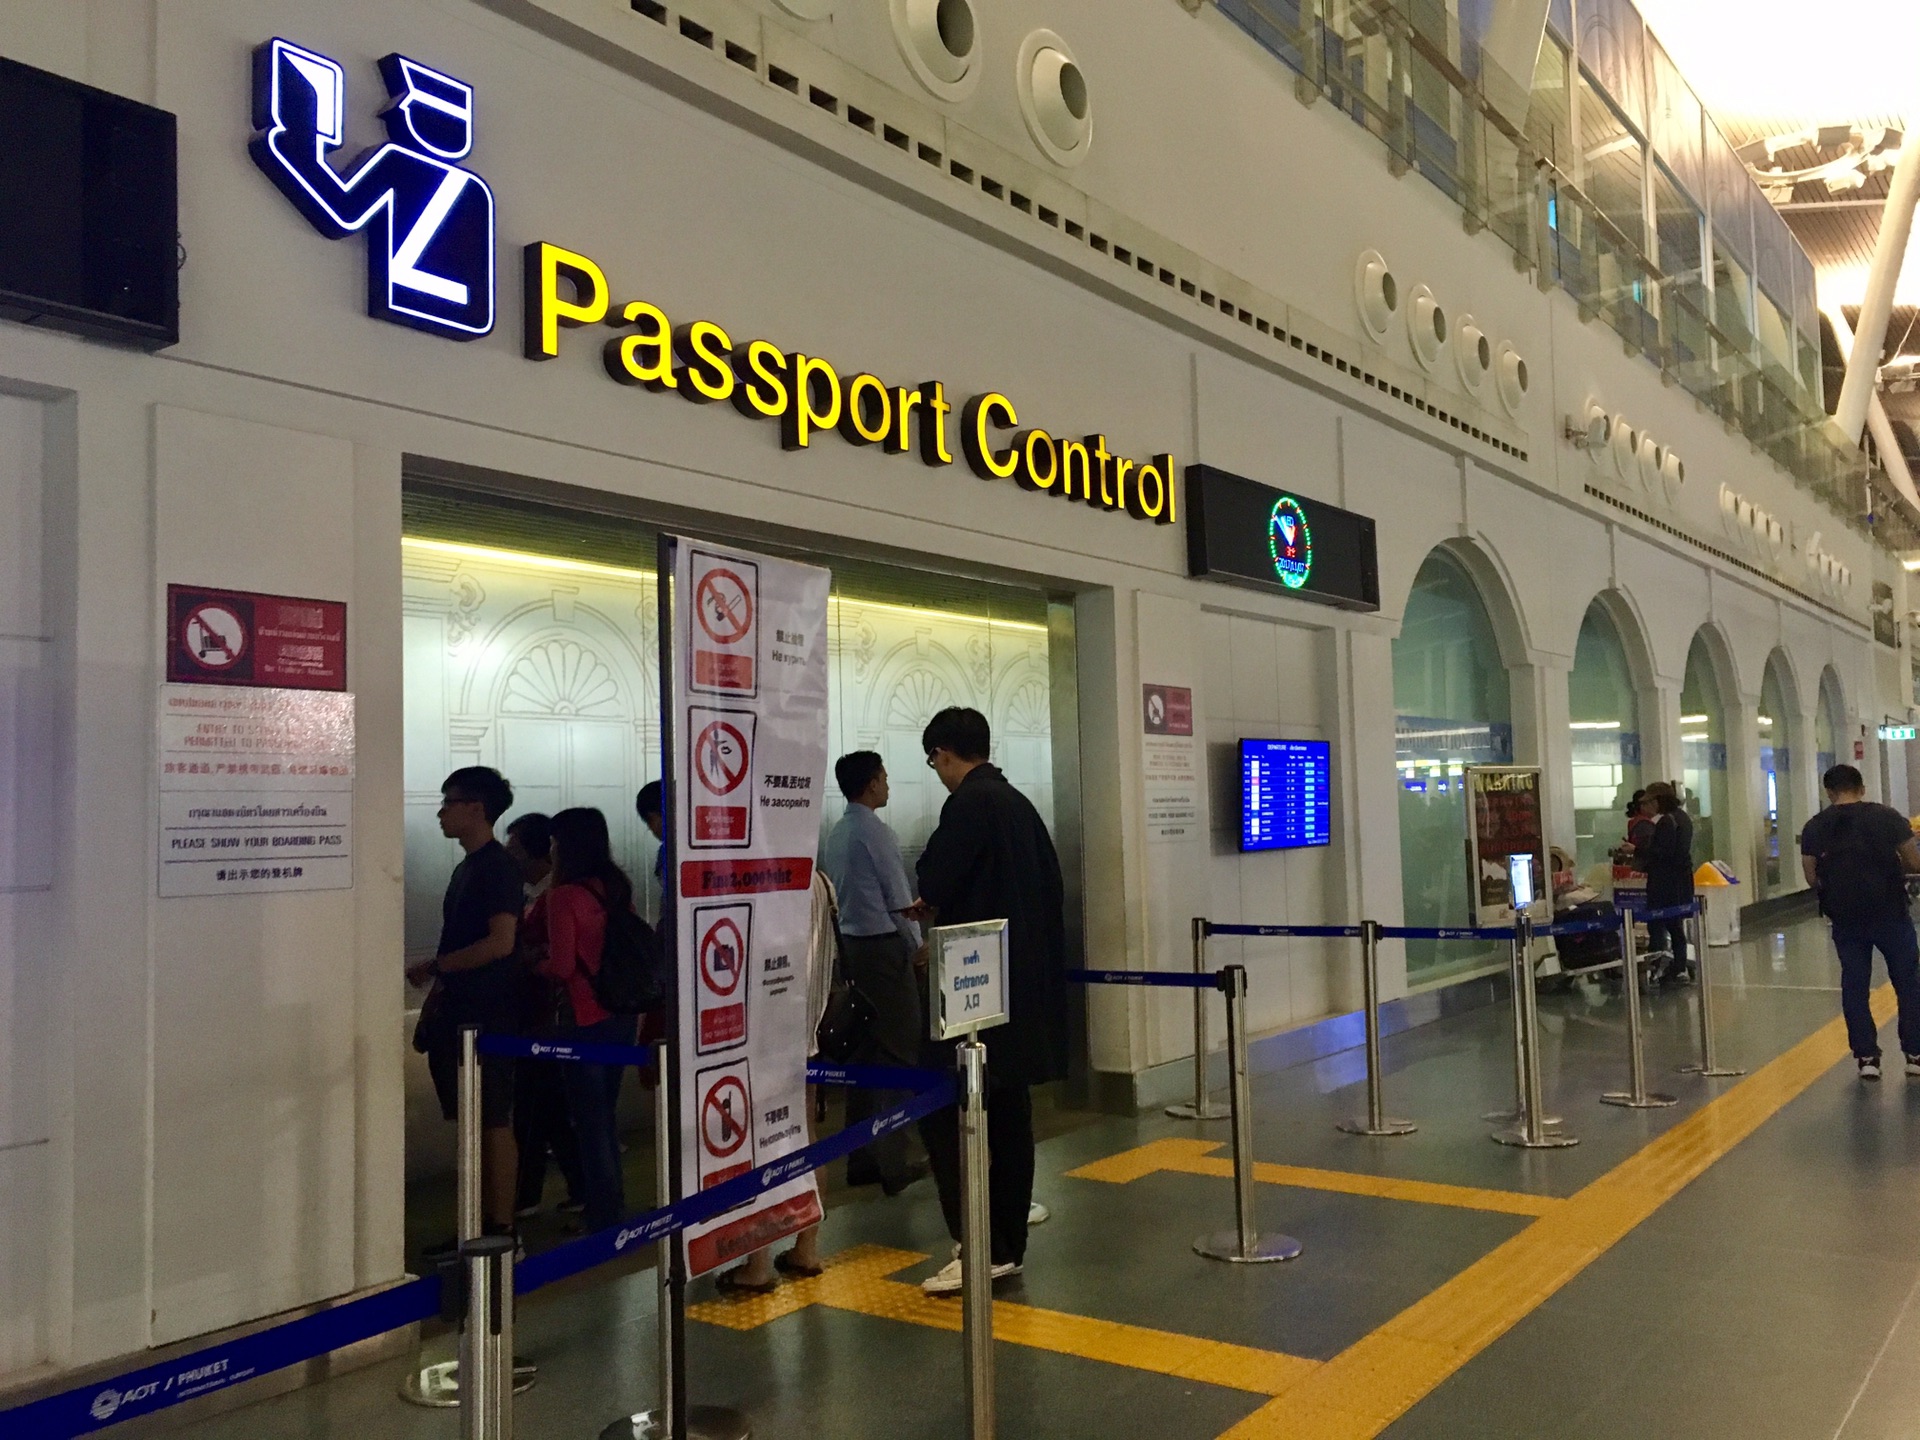 回程在普吉机场,人家的安检叫passport control,叫法也是独特